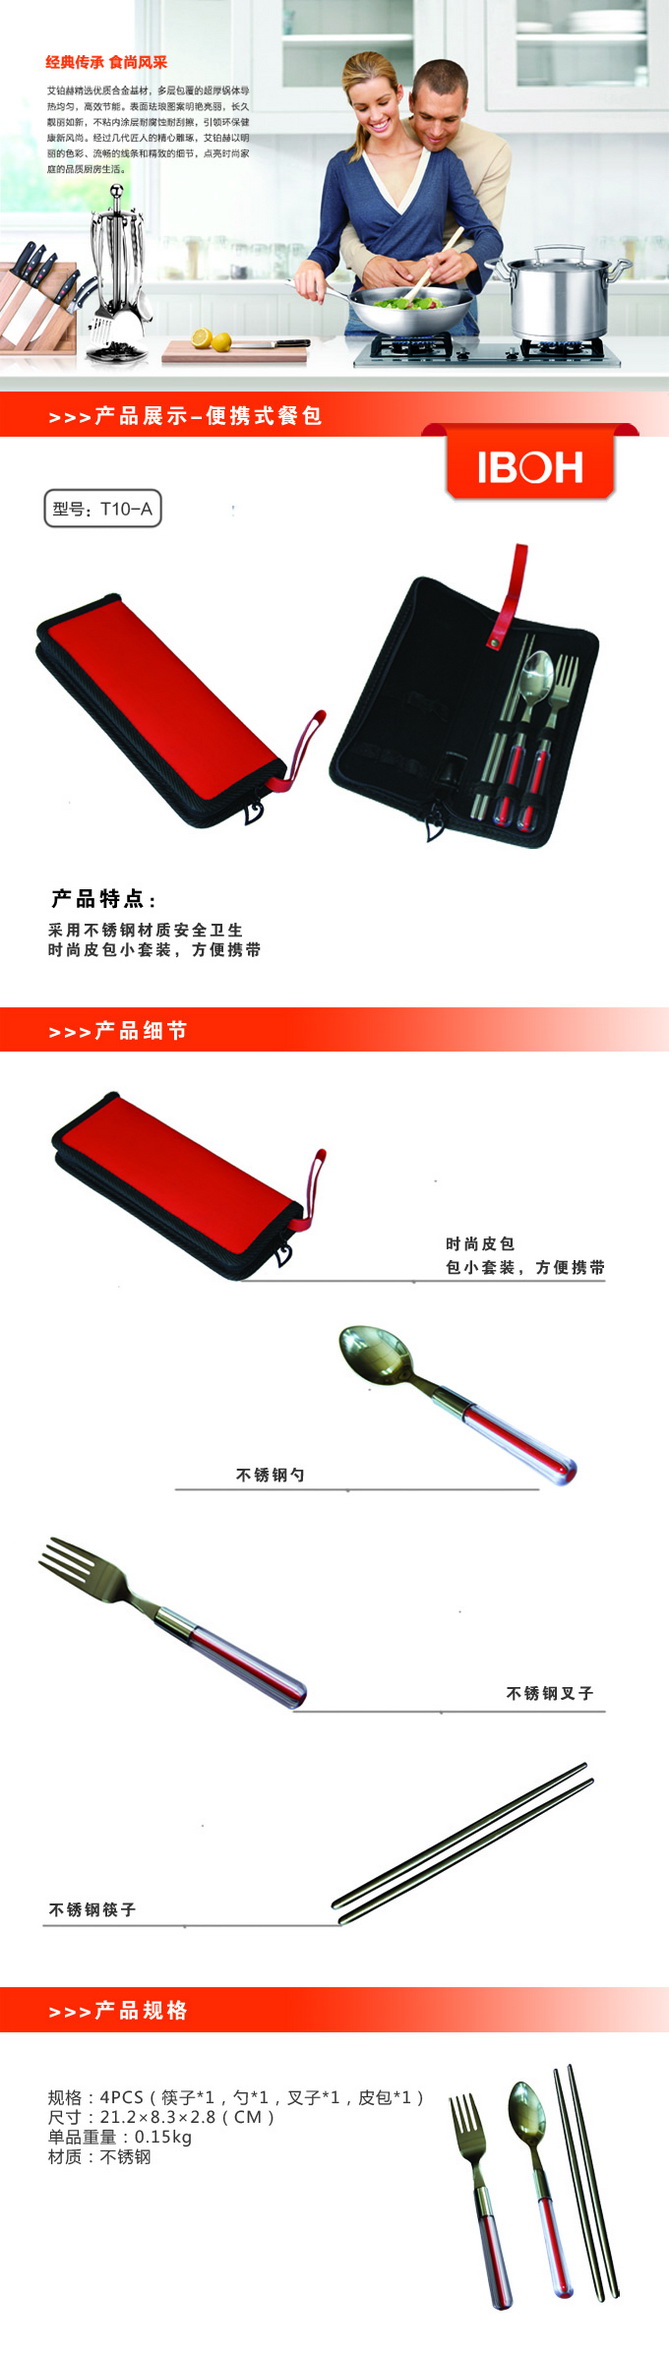 四川馆促销 艾铂赫 T10-A  厨具便携式餐包采用不锈钢材质安全卫生